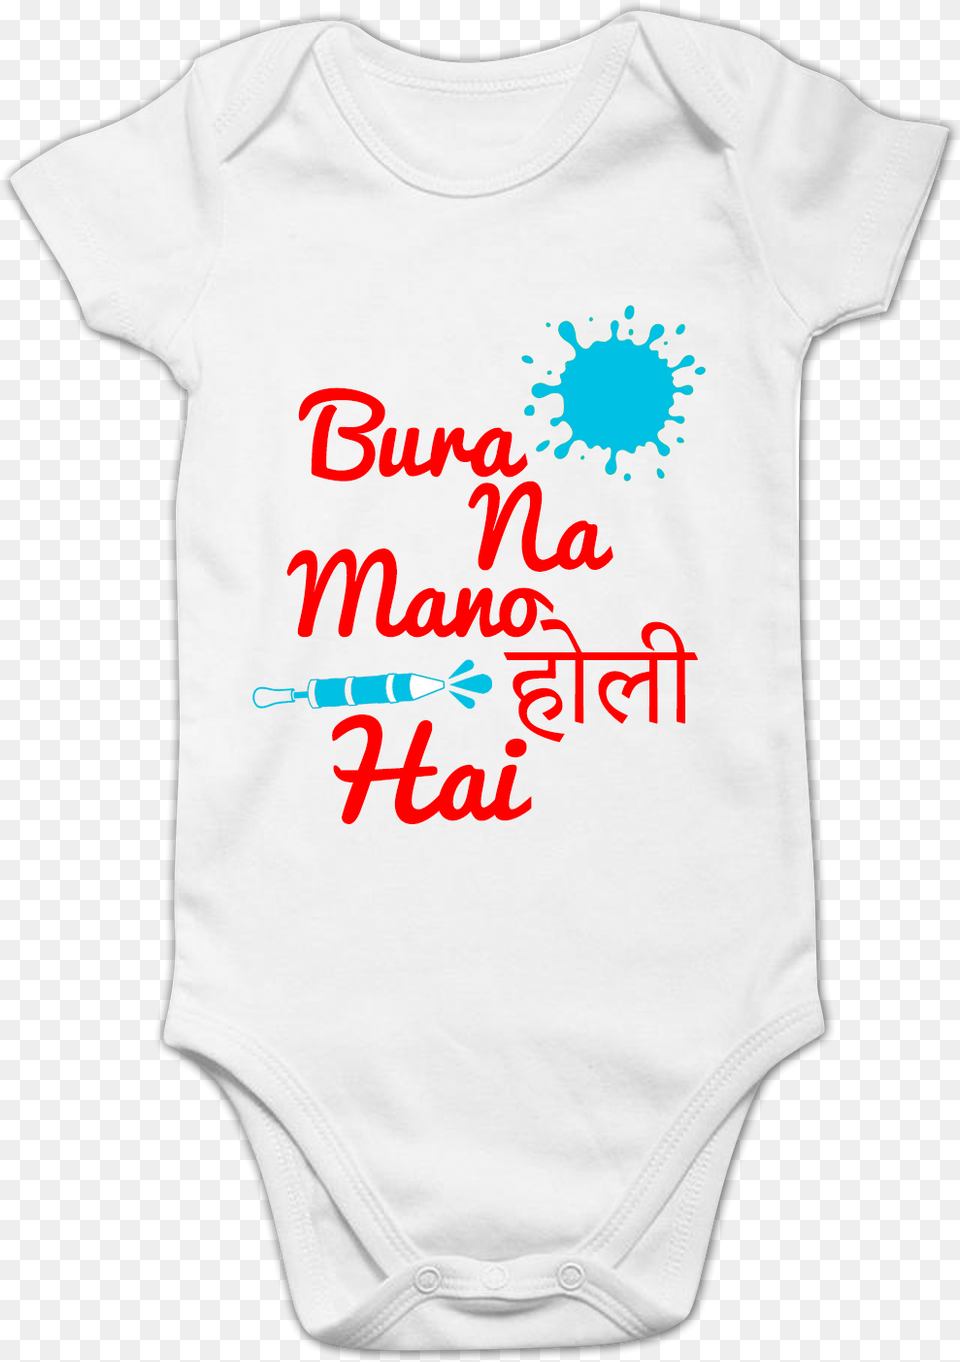 Funcart Bura Na Mano Holi Hai Printed Baby Romper Active Shirt, Clothing, T-shirt Png